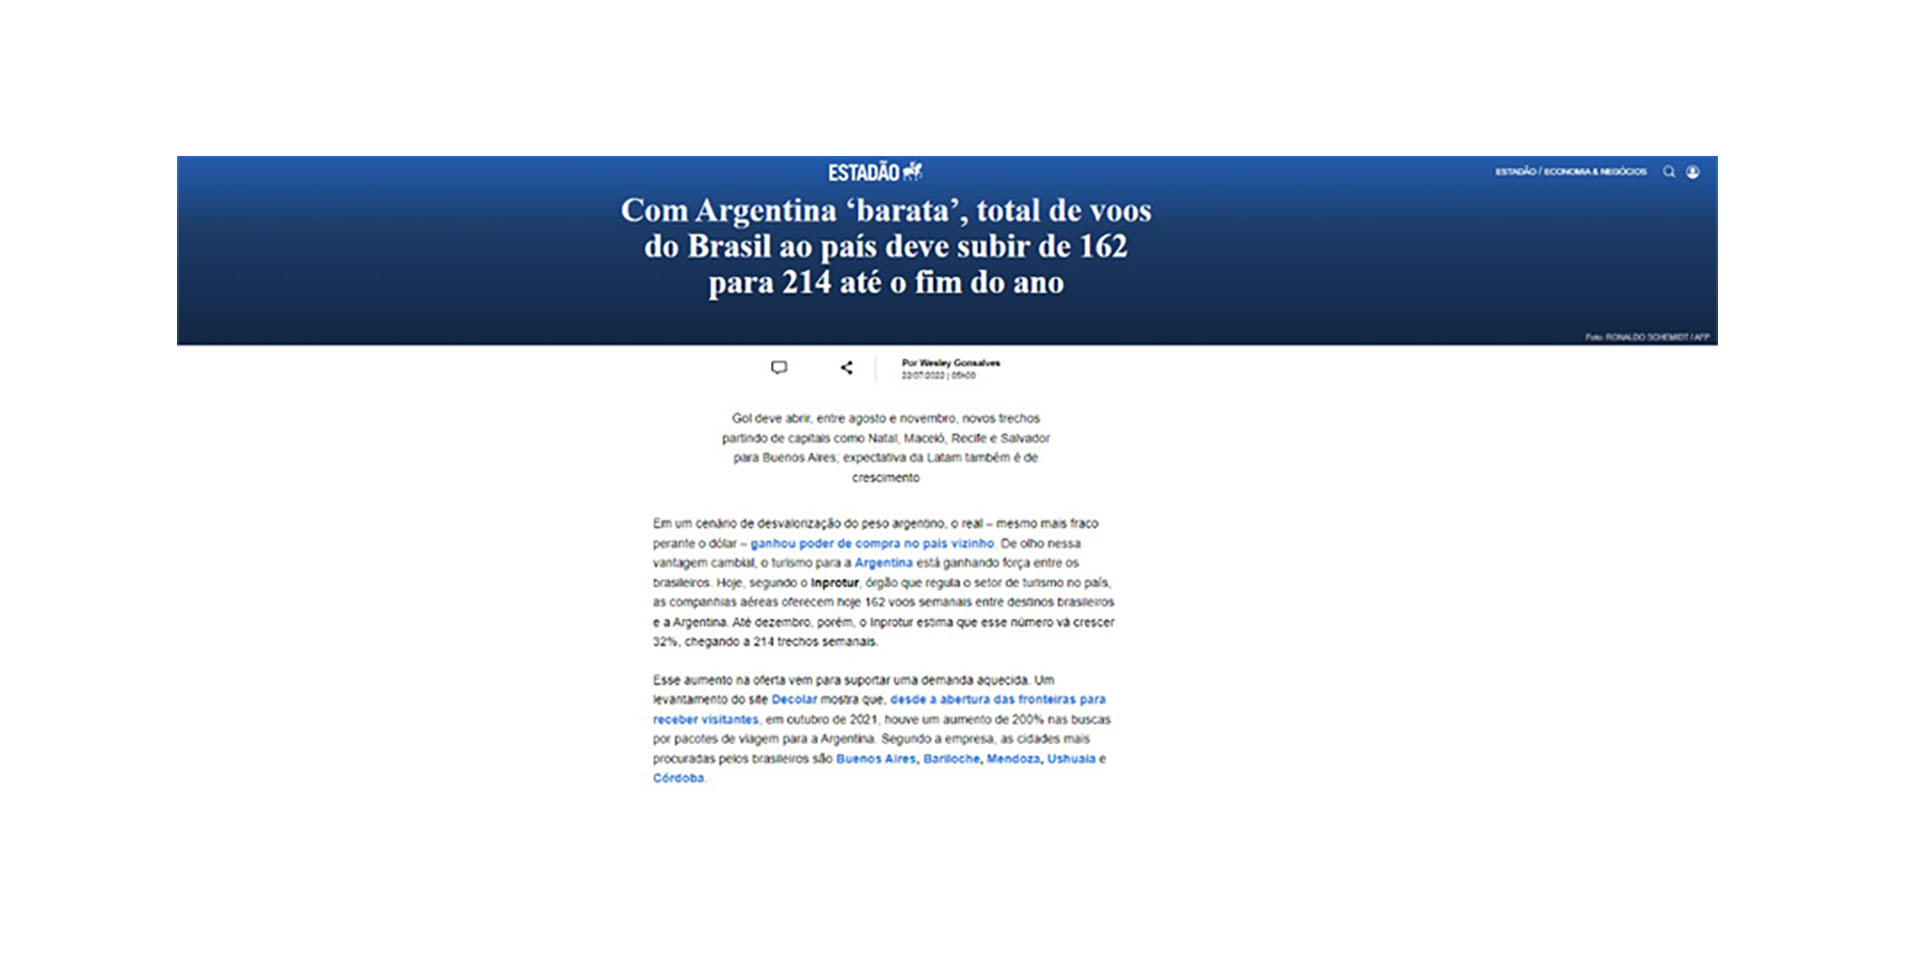 Estadao publica hoy una nota en la que da cuenta de la necesidad de aumento de las frecuencias aéreas a la Argentina dada la demanda de turistas brasileños.